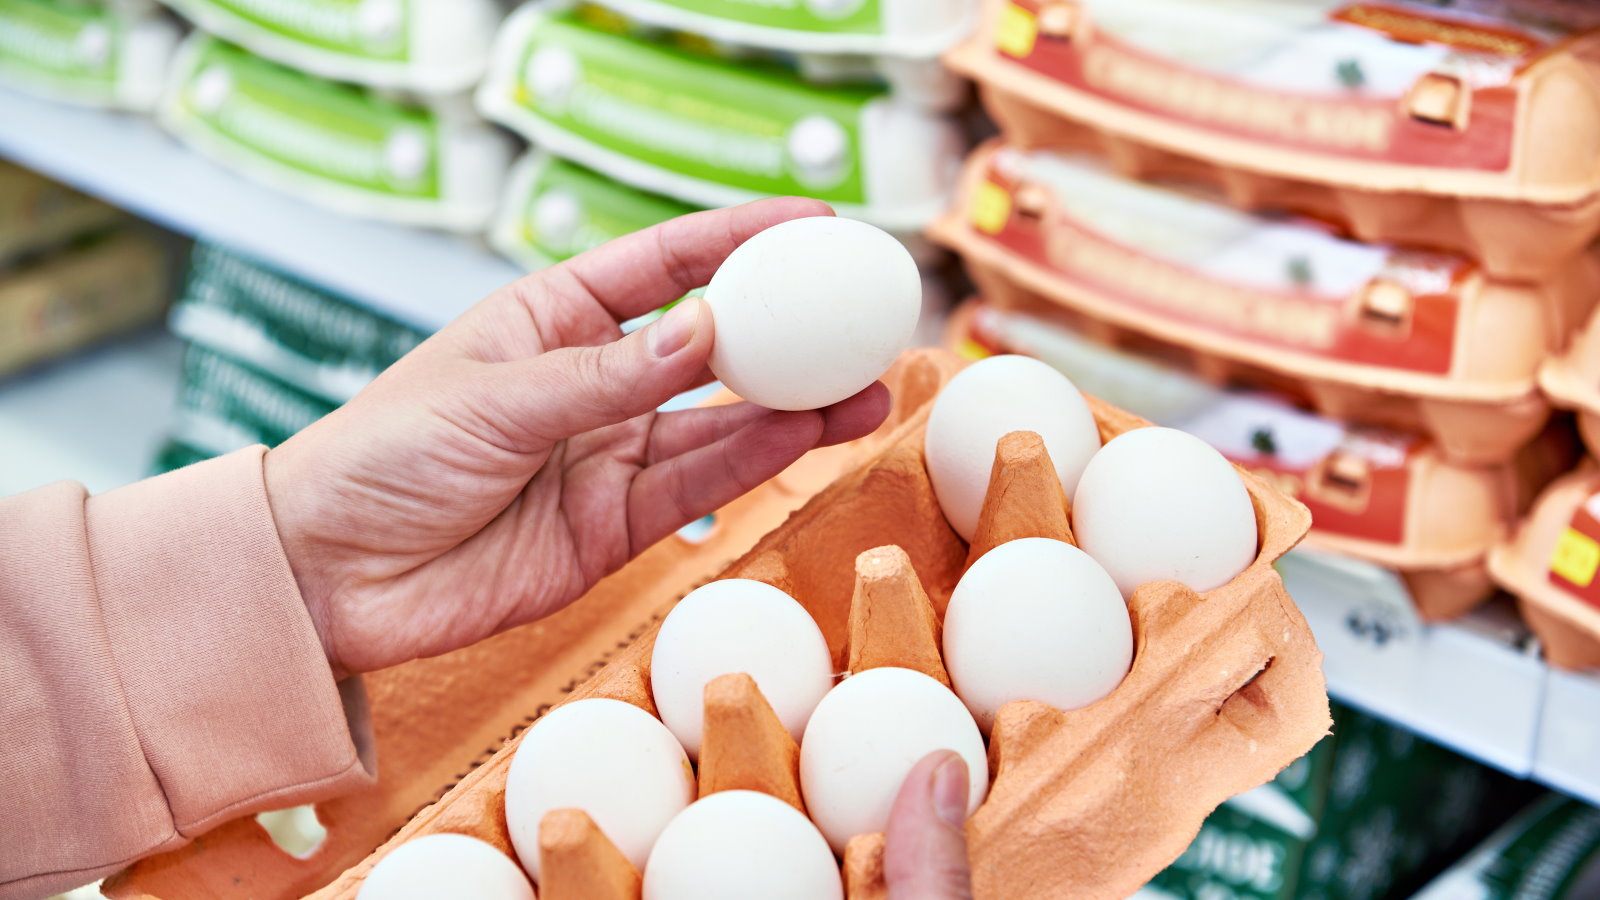 СМИ: цены на яйца и птицу могут вырасти в России